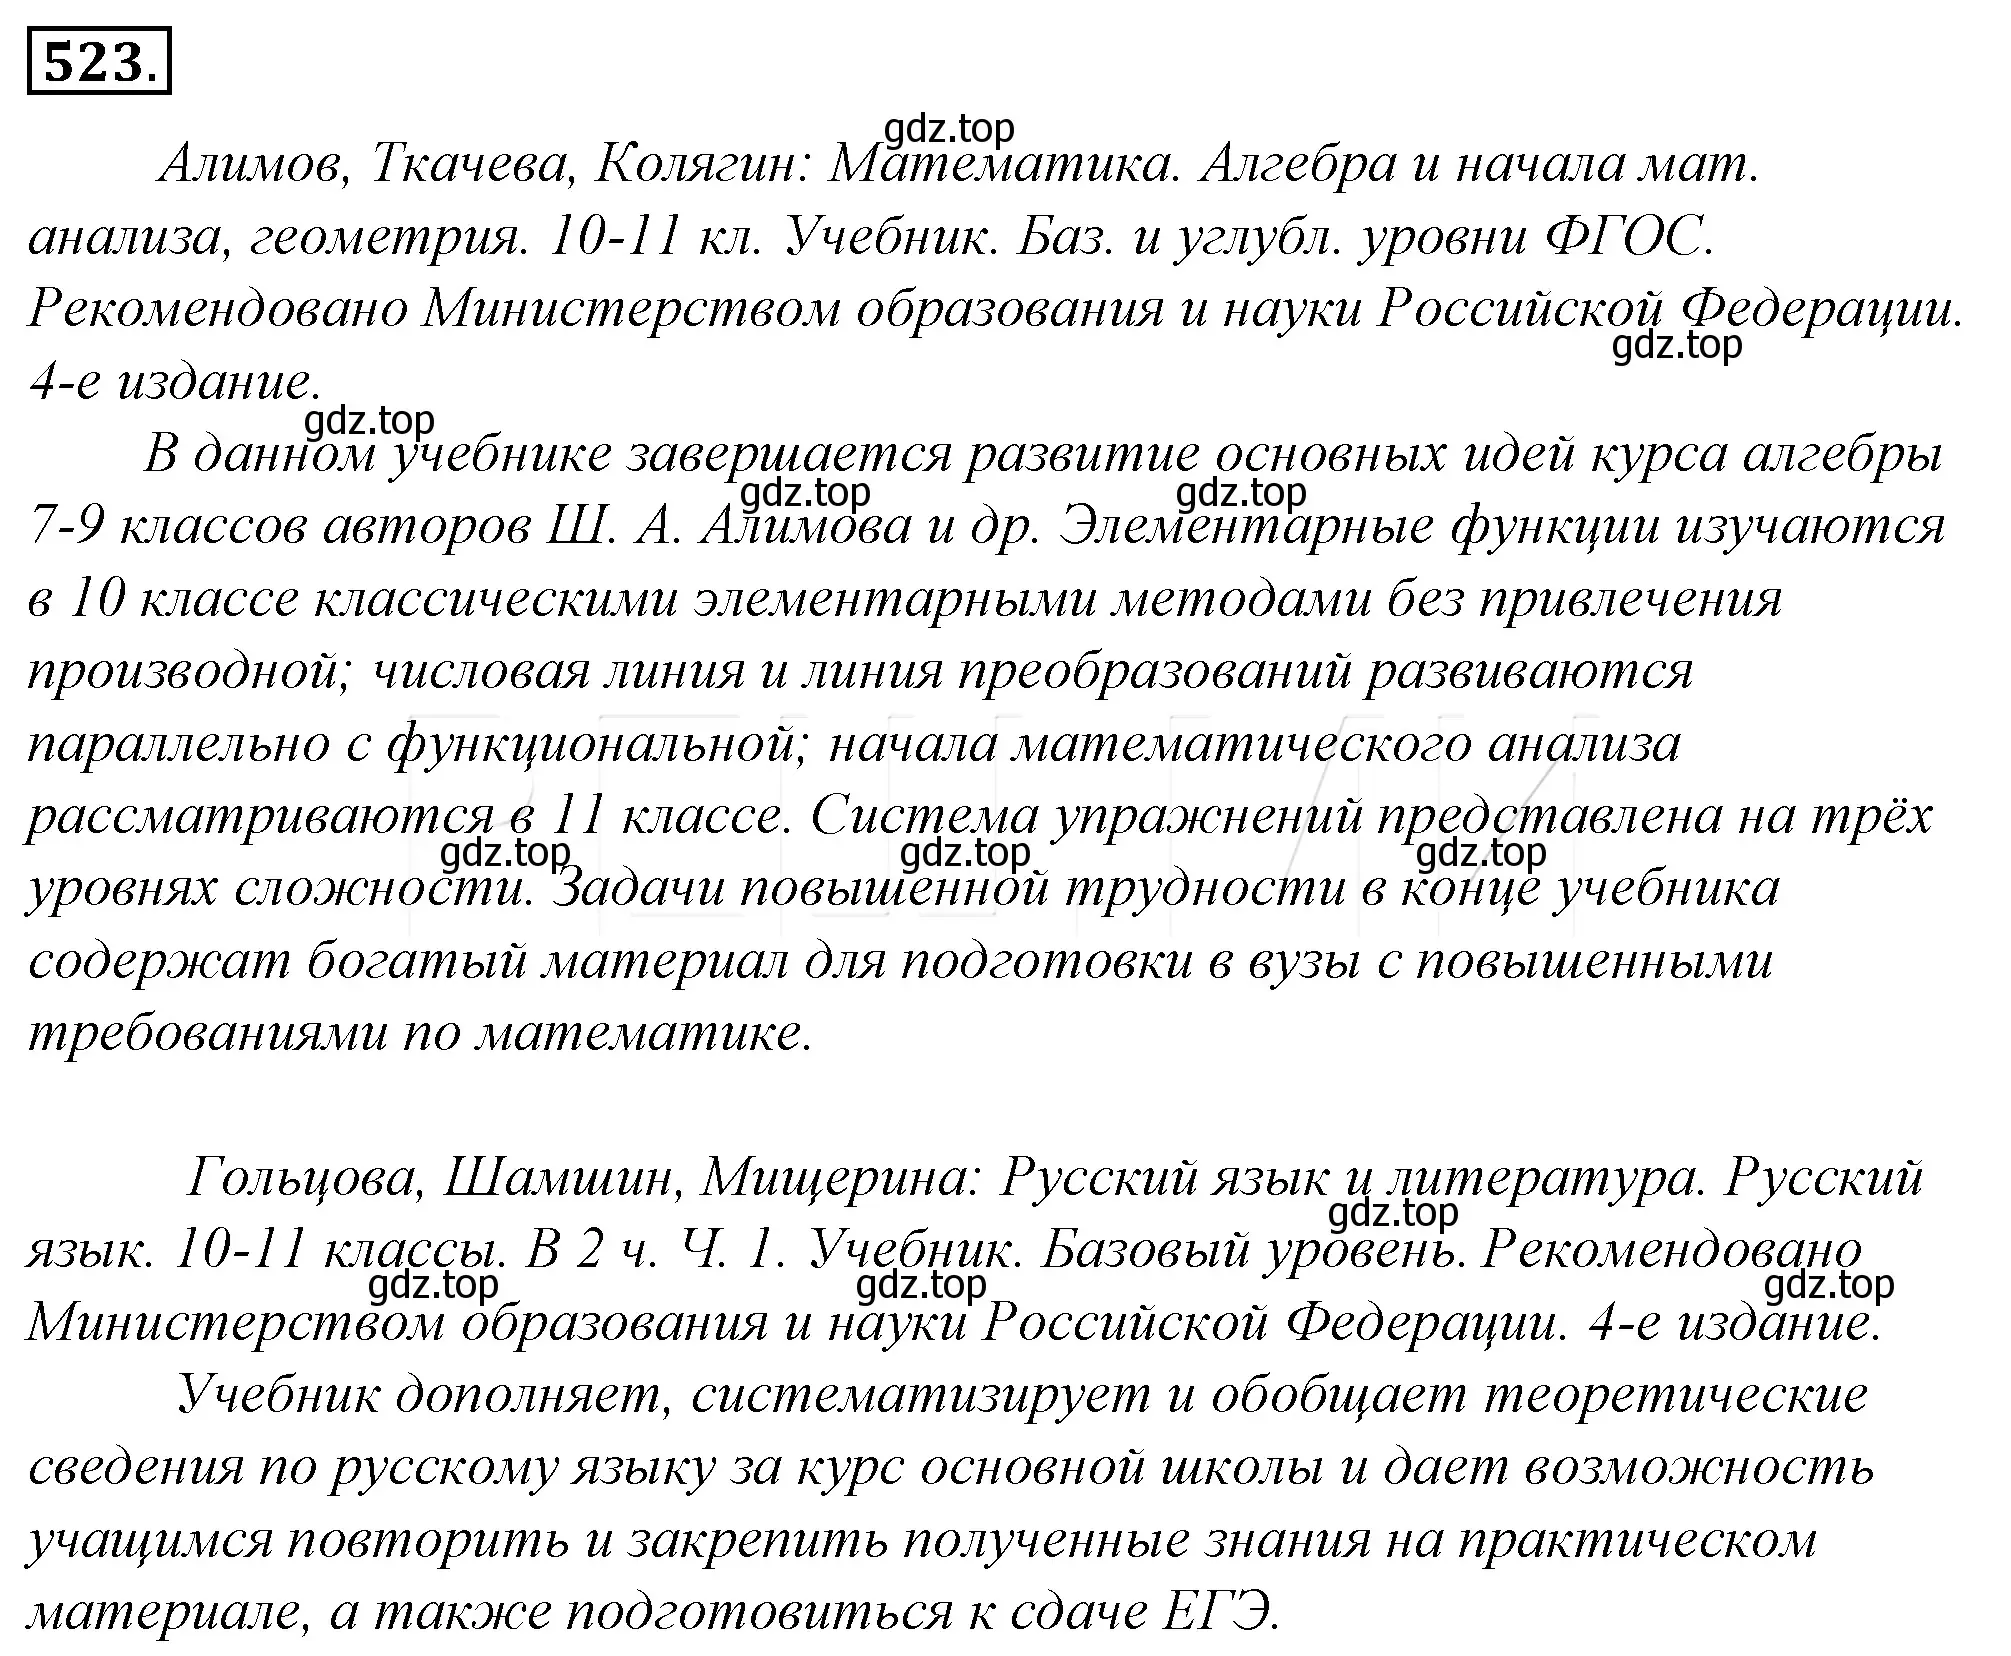 Решение 4. номер 199 (страница 278) гдз по русскому языку 10-11 класс Гольцова, Шамшин, учебник 2 часть